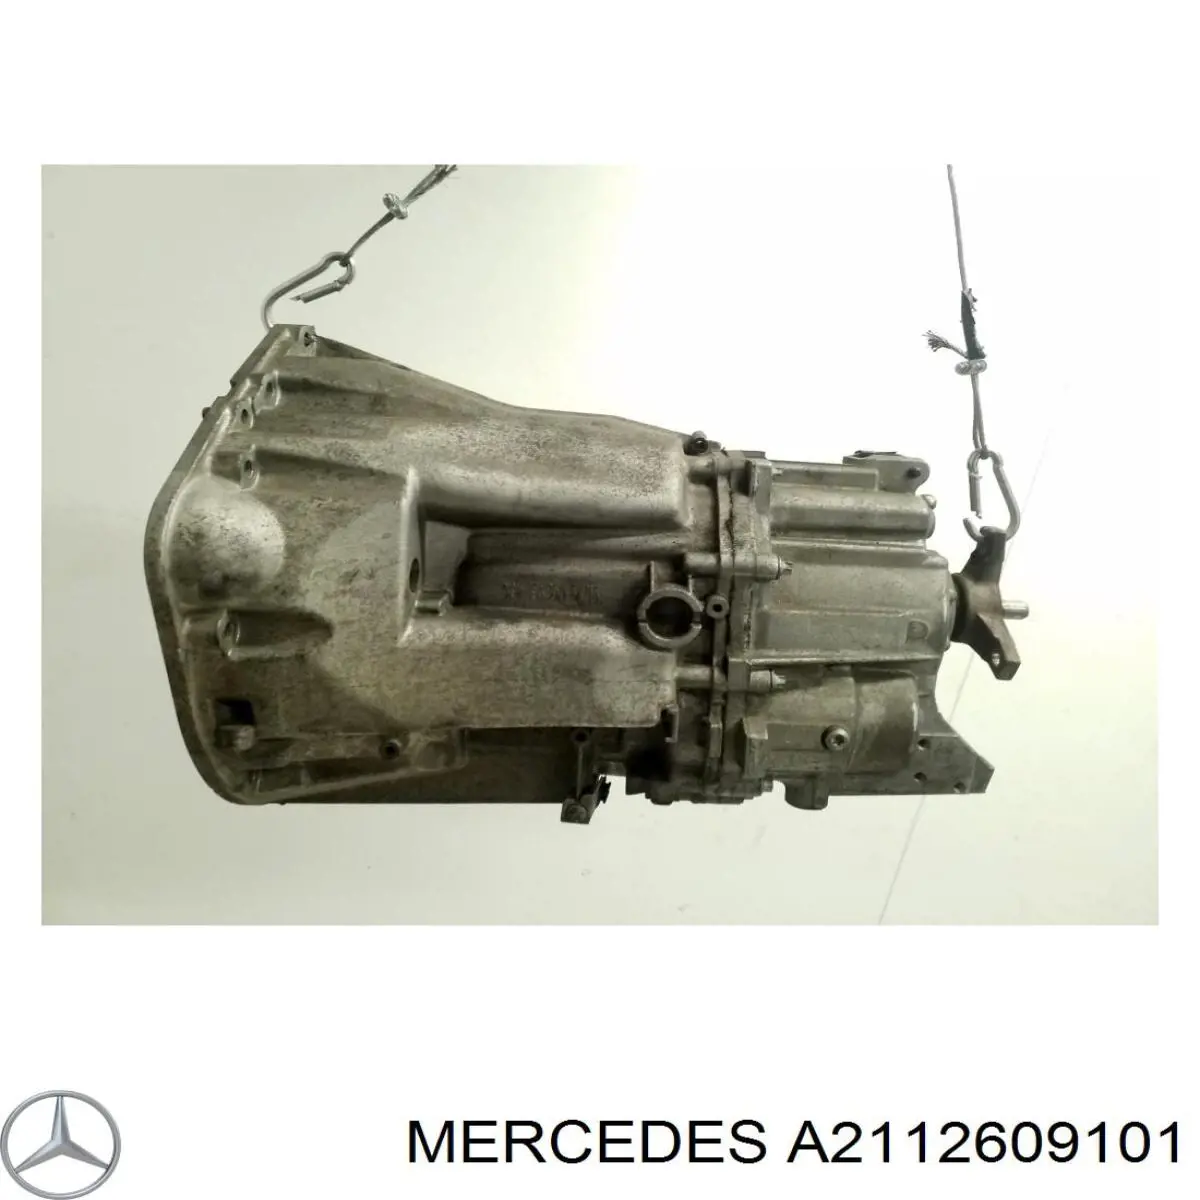 2112604801 Mercedes caixa de mudança montada (caixa mecânica de velocidades)